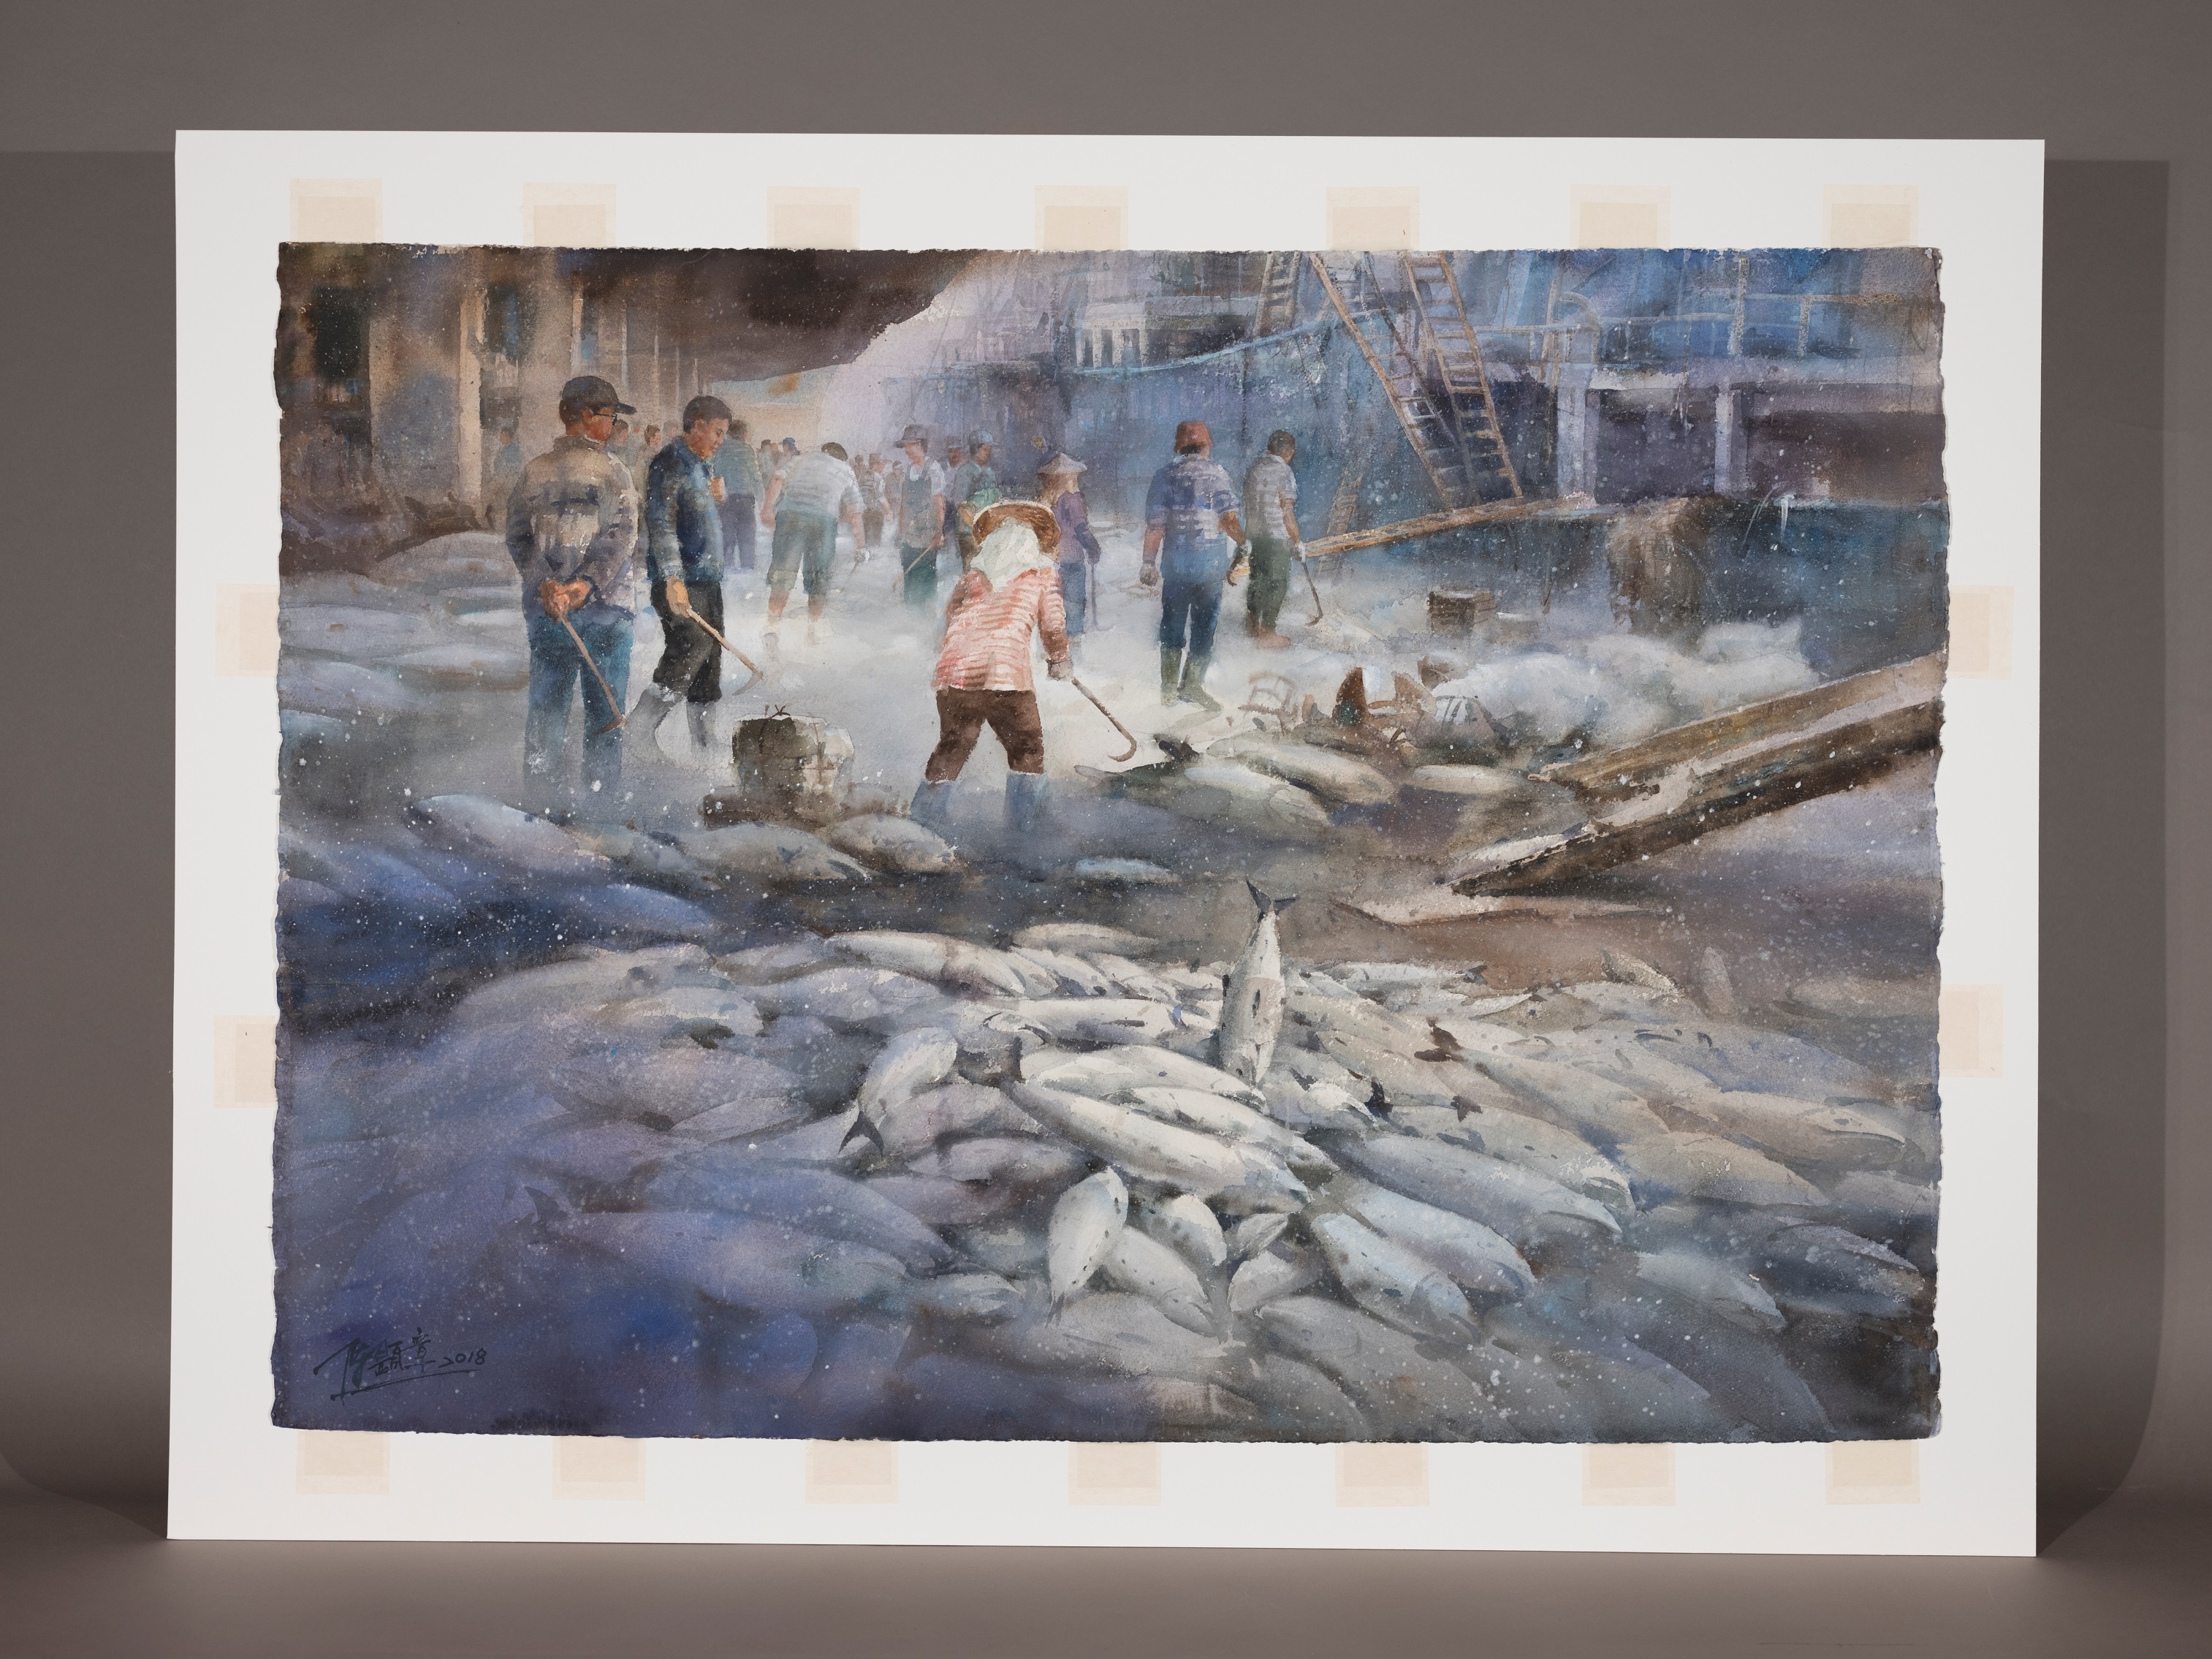 陳顯彰的水彩畫〈豐收〉捕捉了漁港的忙碌時刻，表現遠洋漁船靠港卸下的豐收漁獲。在畫面最前方是成堆的冷凍漁獲，也是構圖的最下方。